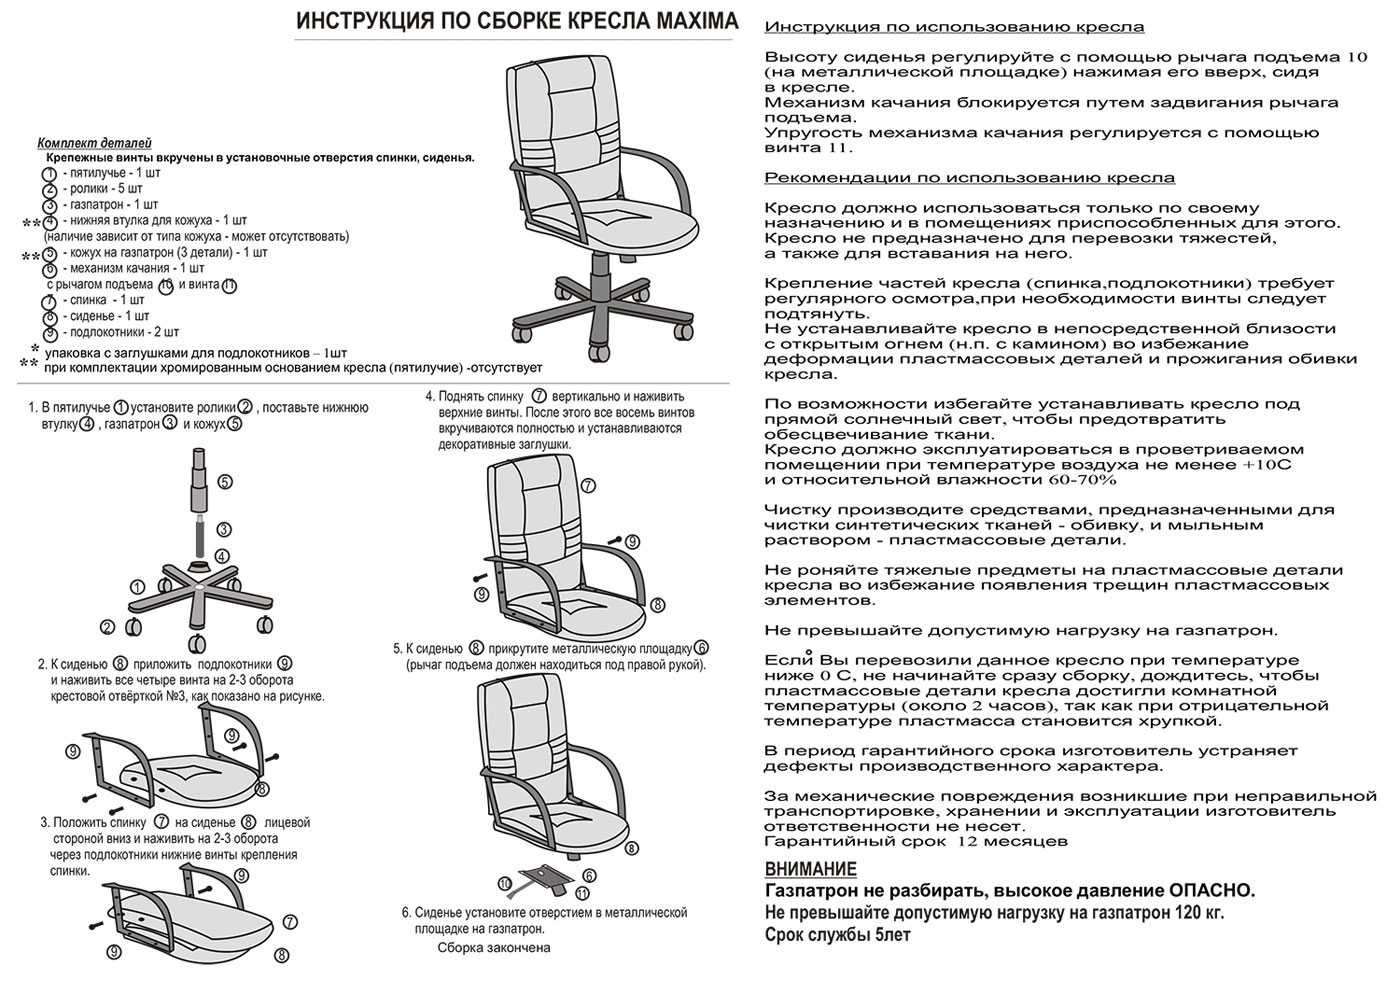 Особенности перетяжки офисного кресла своими руками: инструкция и рекомендации